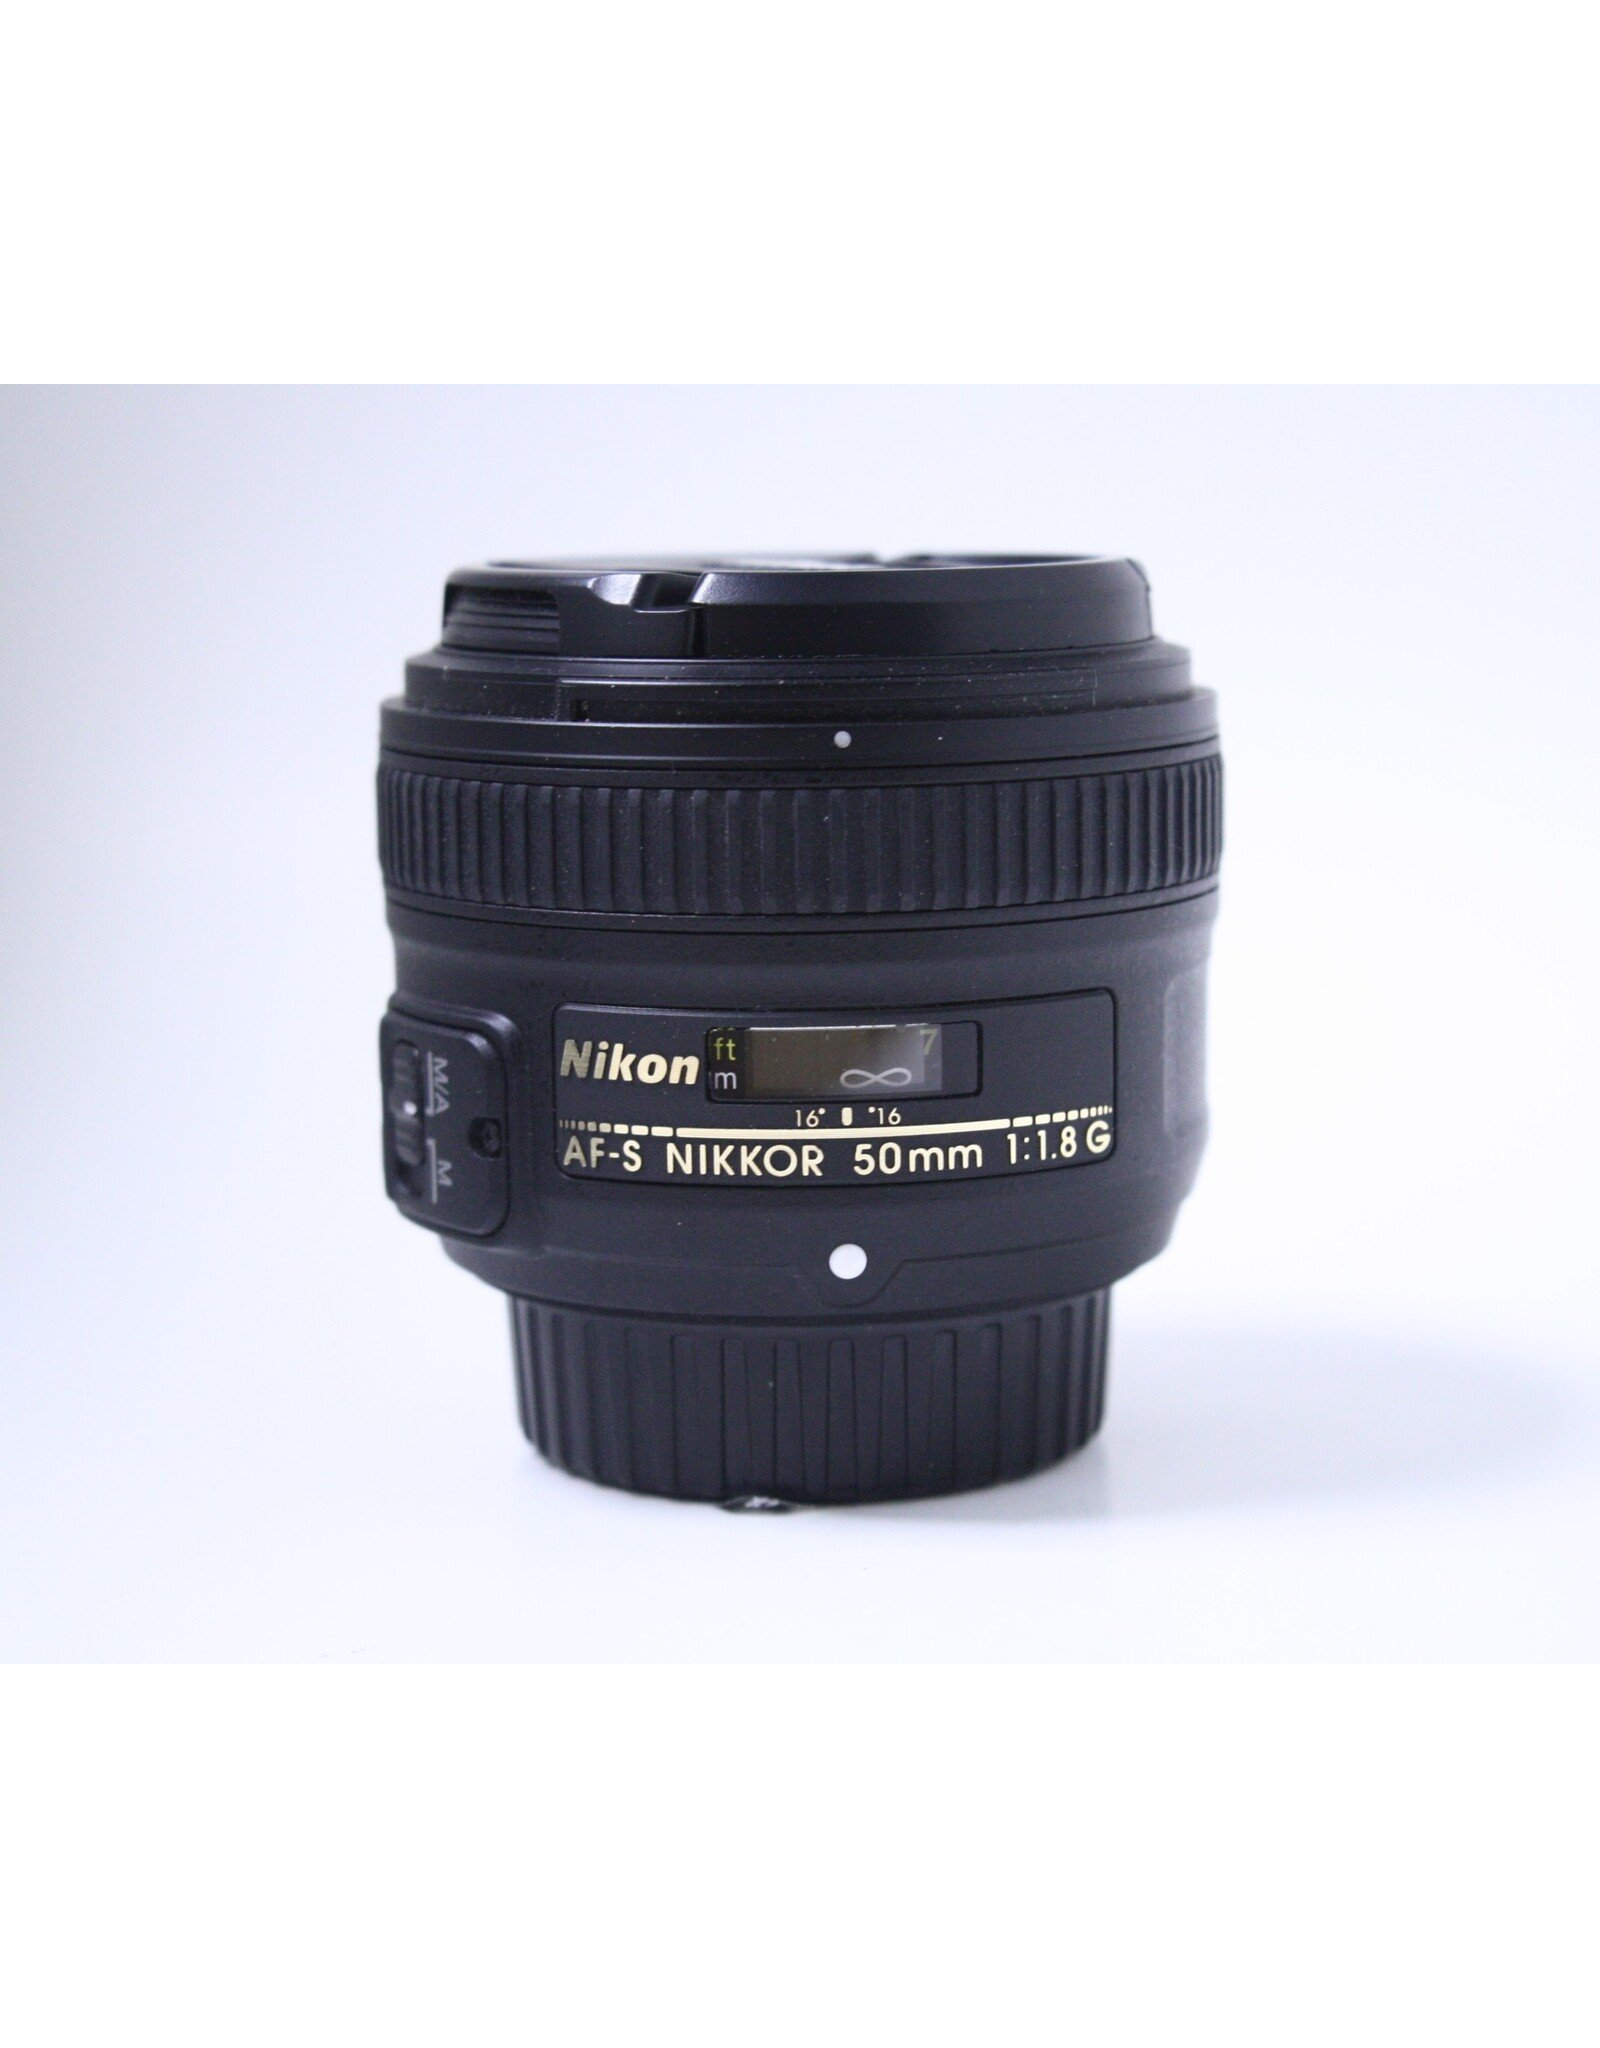 Nikon AF-S Nikkor 50mm 1.8G Lens with case and hood(Pre-owned